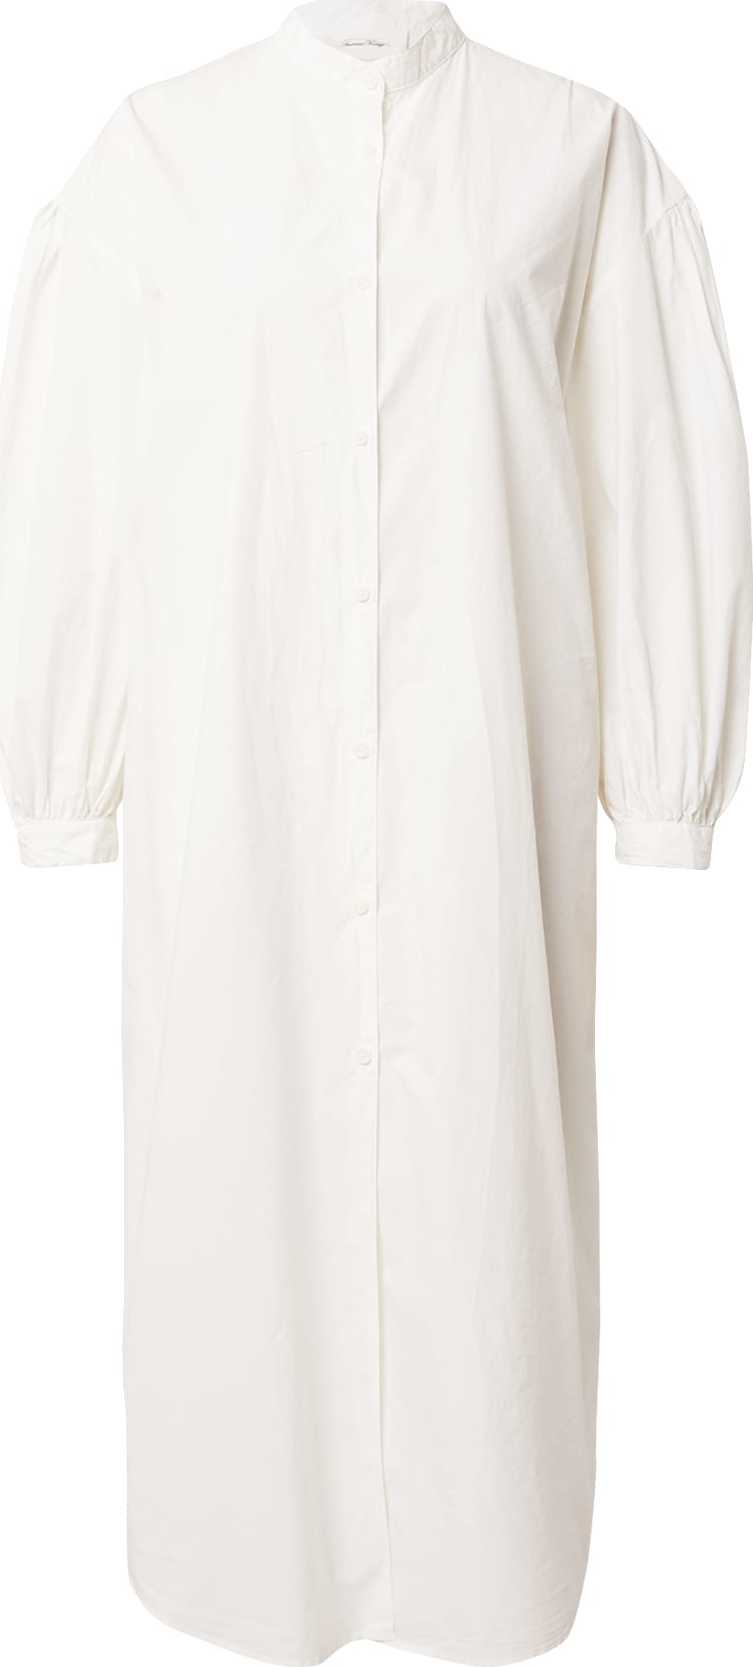 AMERICAN VINTAGE Košilové šaty přírodní bílá